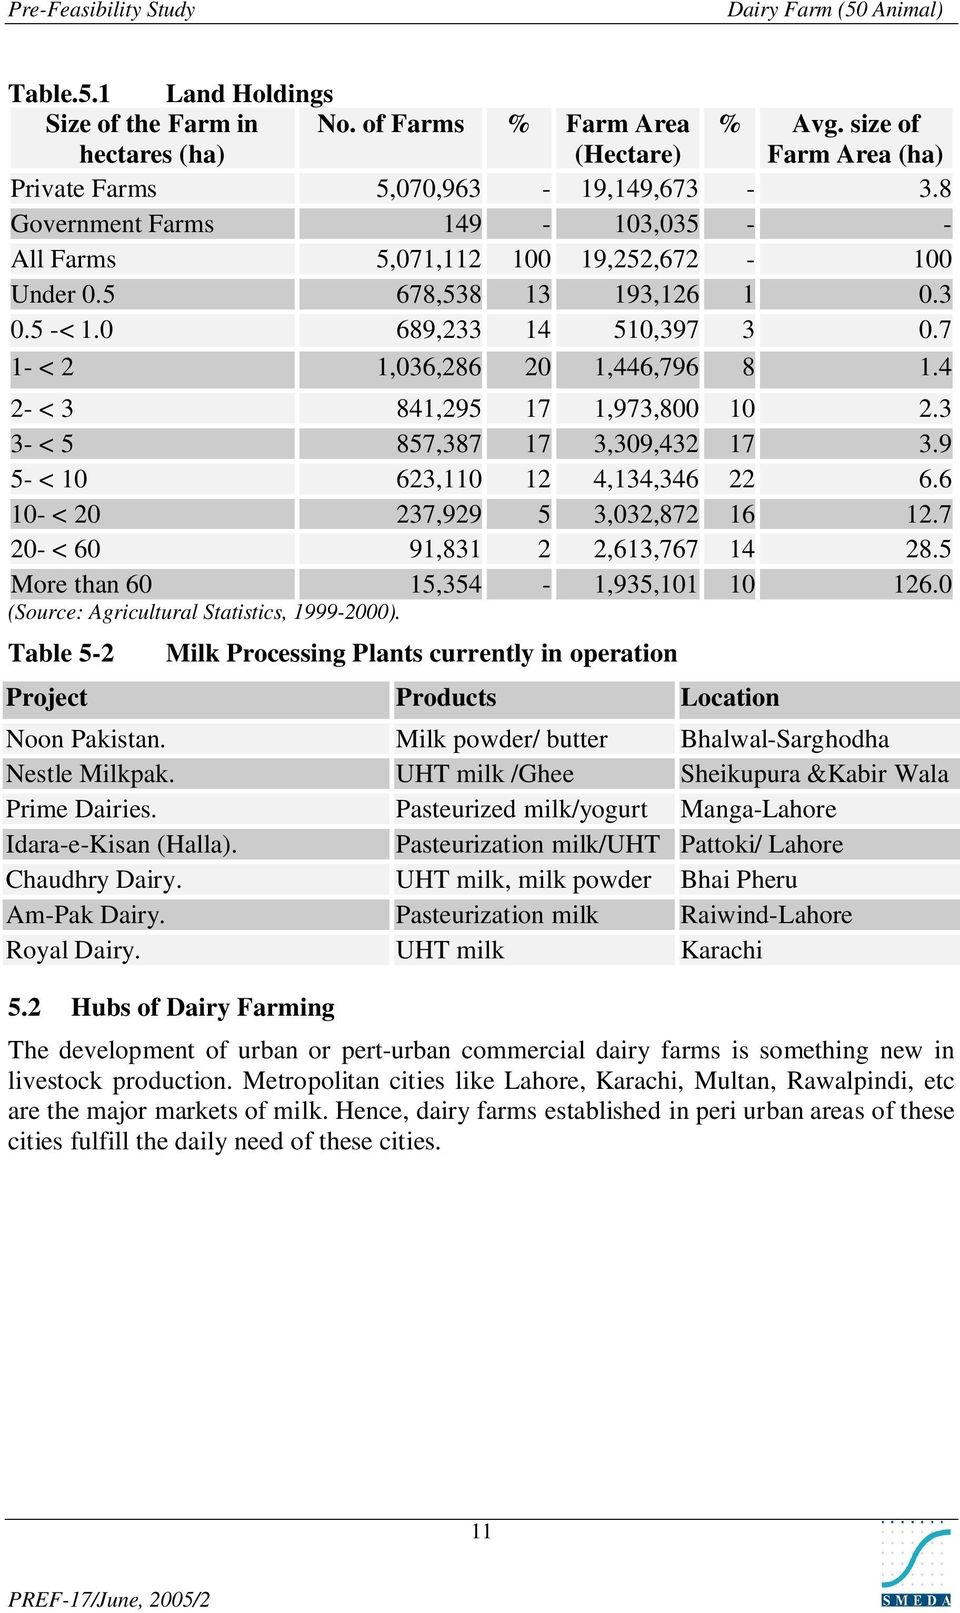 cattle farming in pakistan feasibility